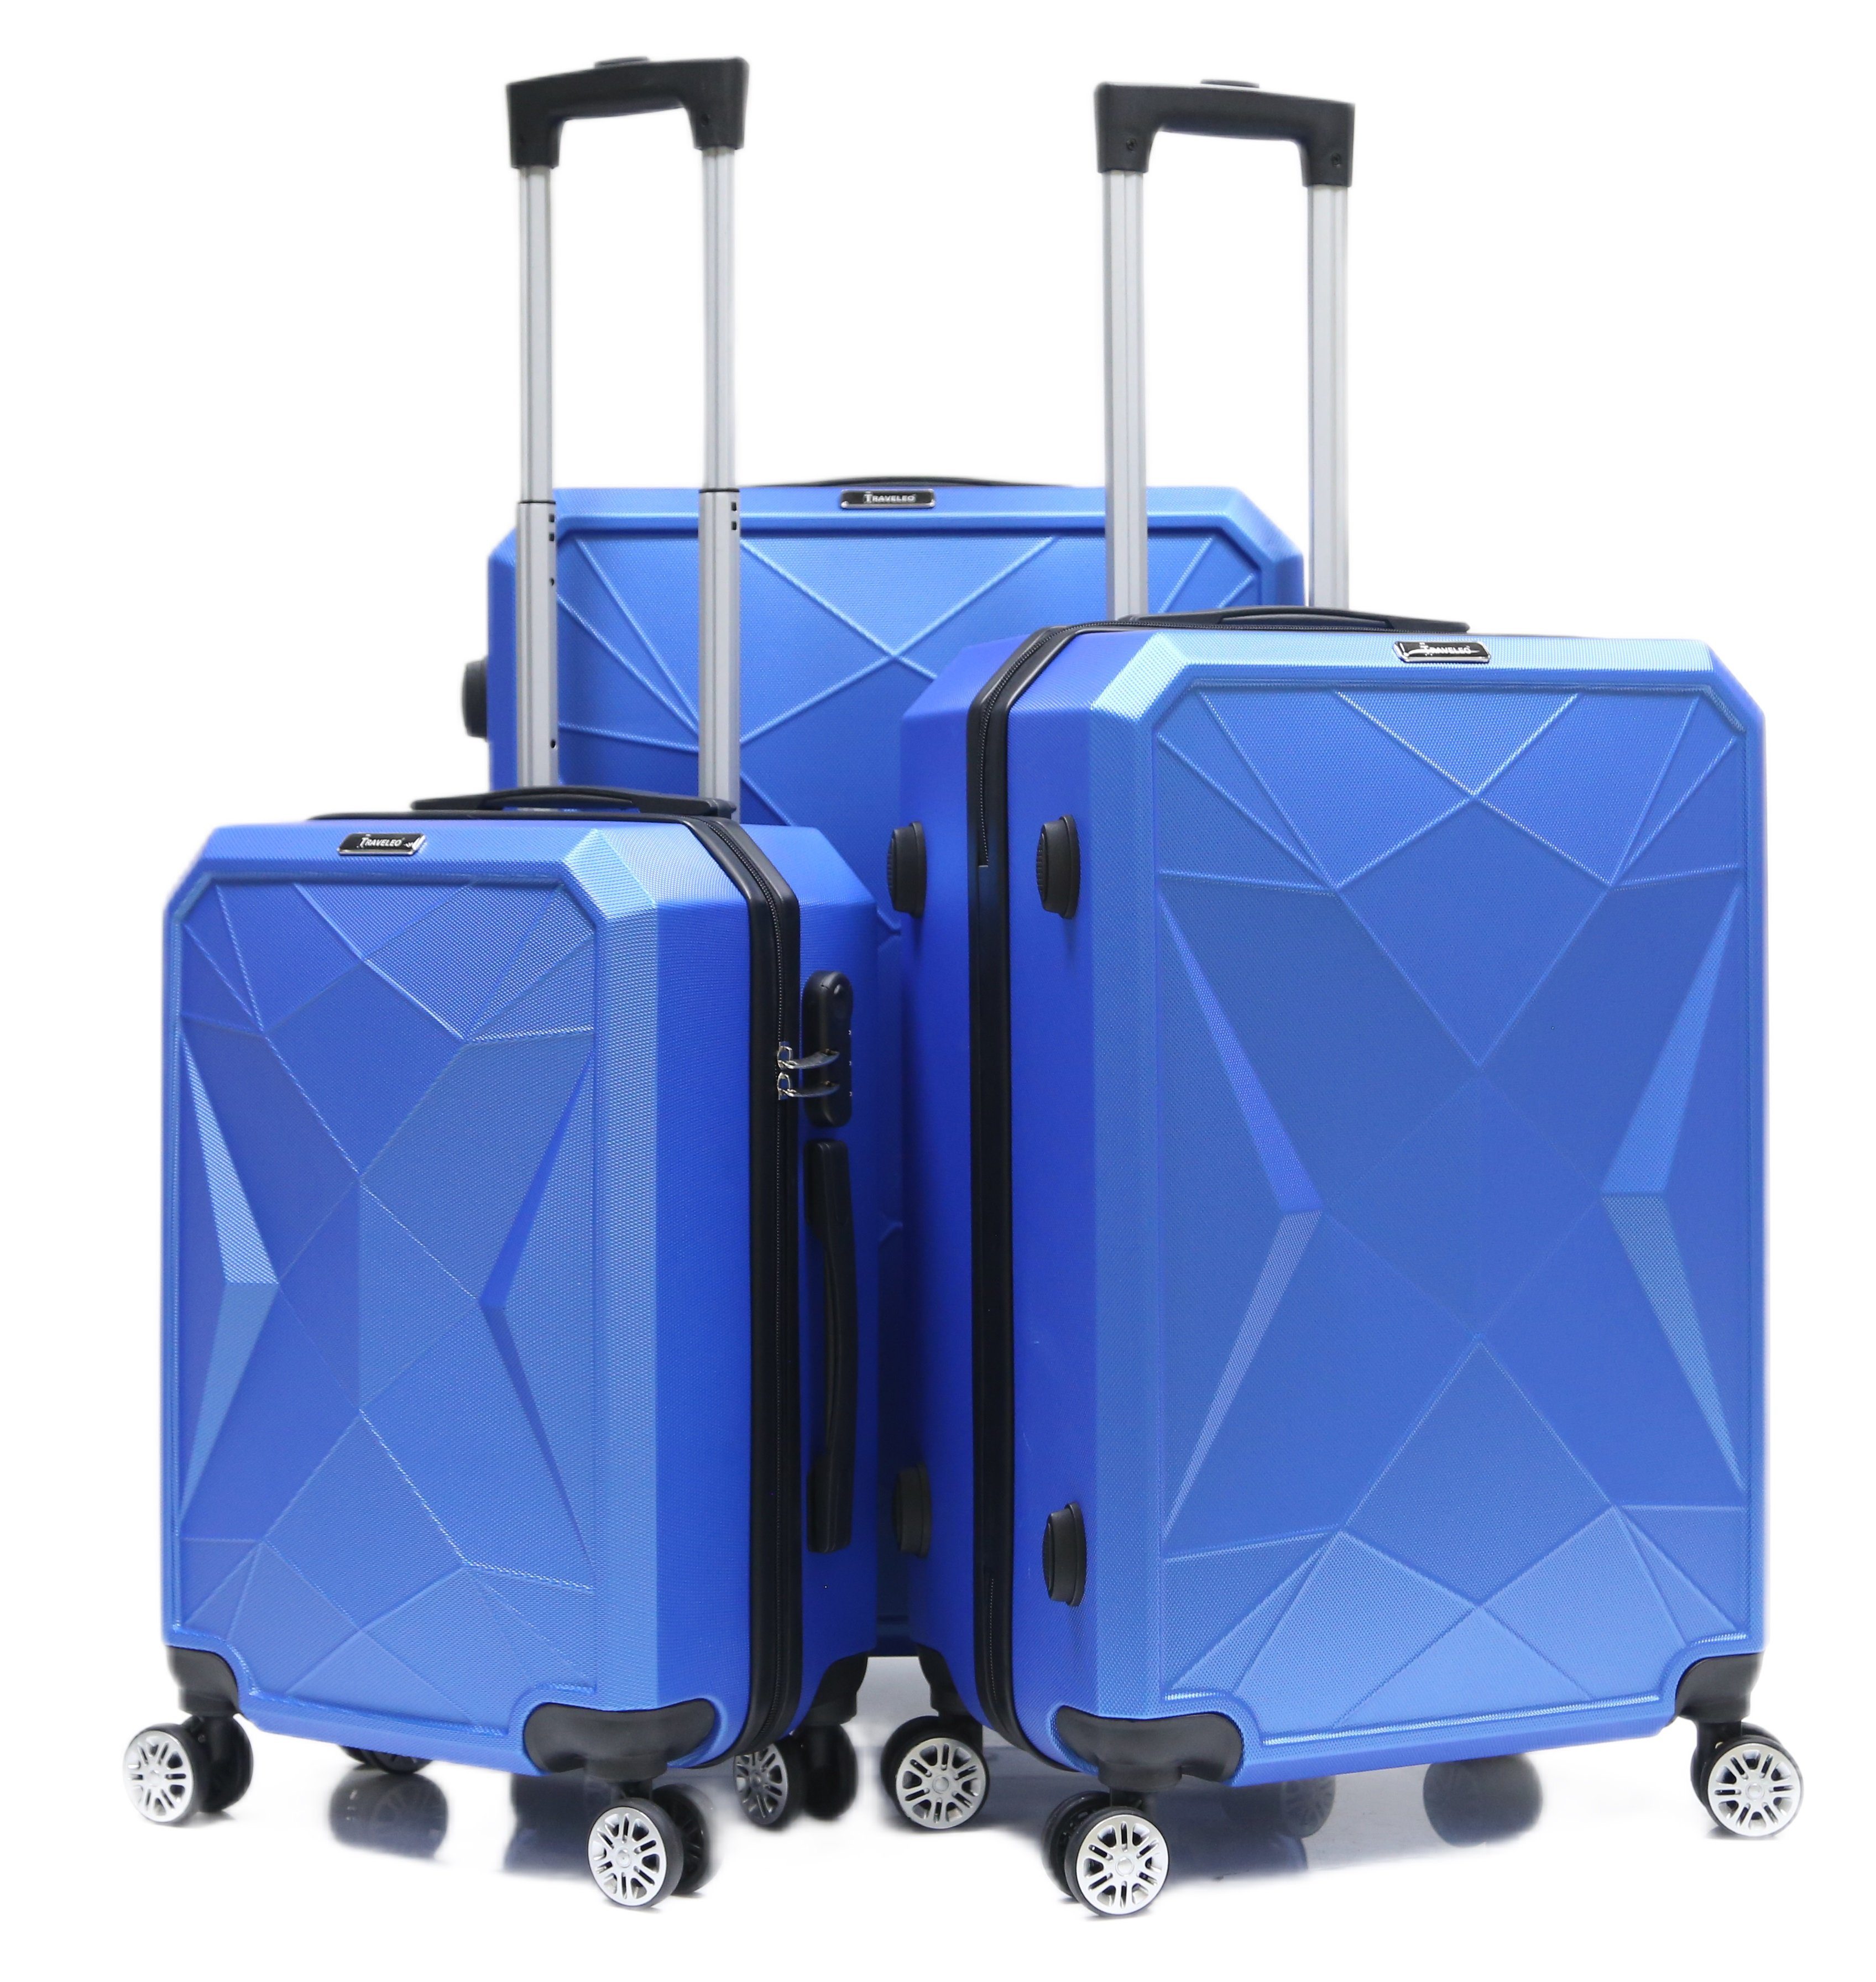 Set tlg) Blau 3-teilig (3 Rollen, Hartschale Kofferset ABS-03 Reisekoffer Koffer Trolley Cheffinger Kofferset, 4